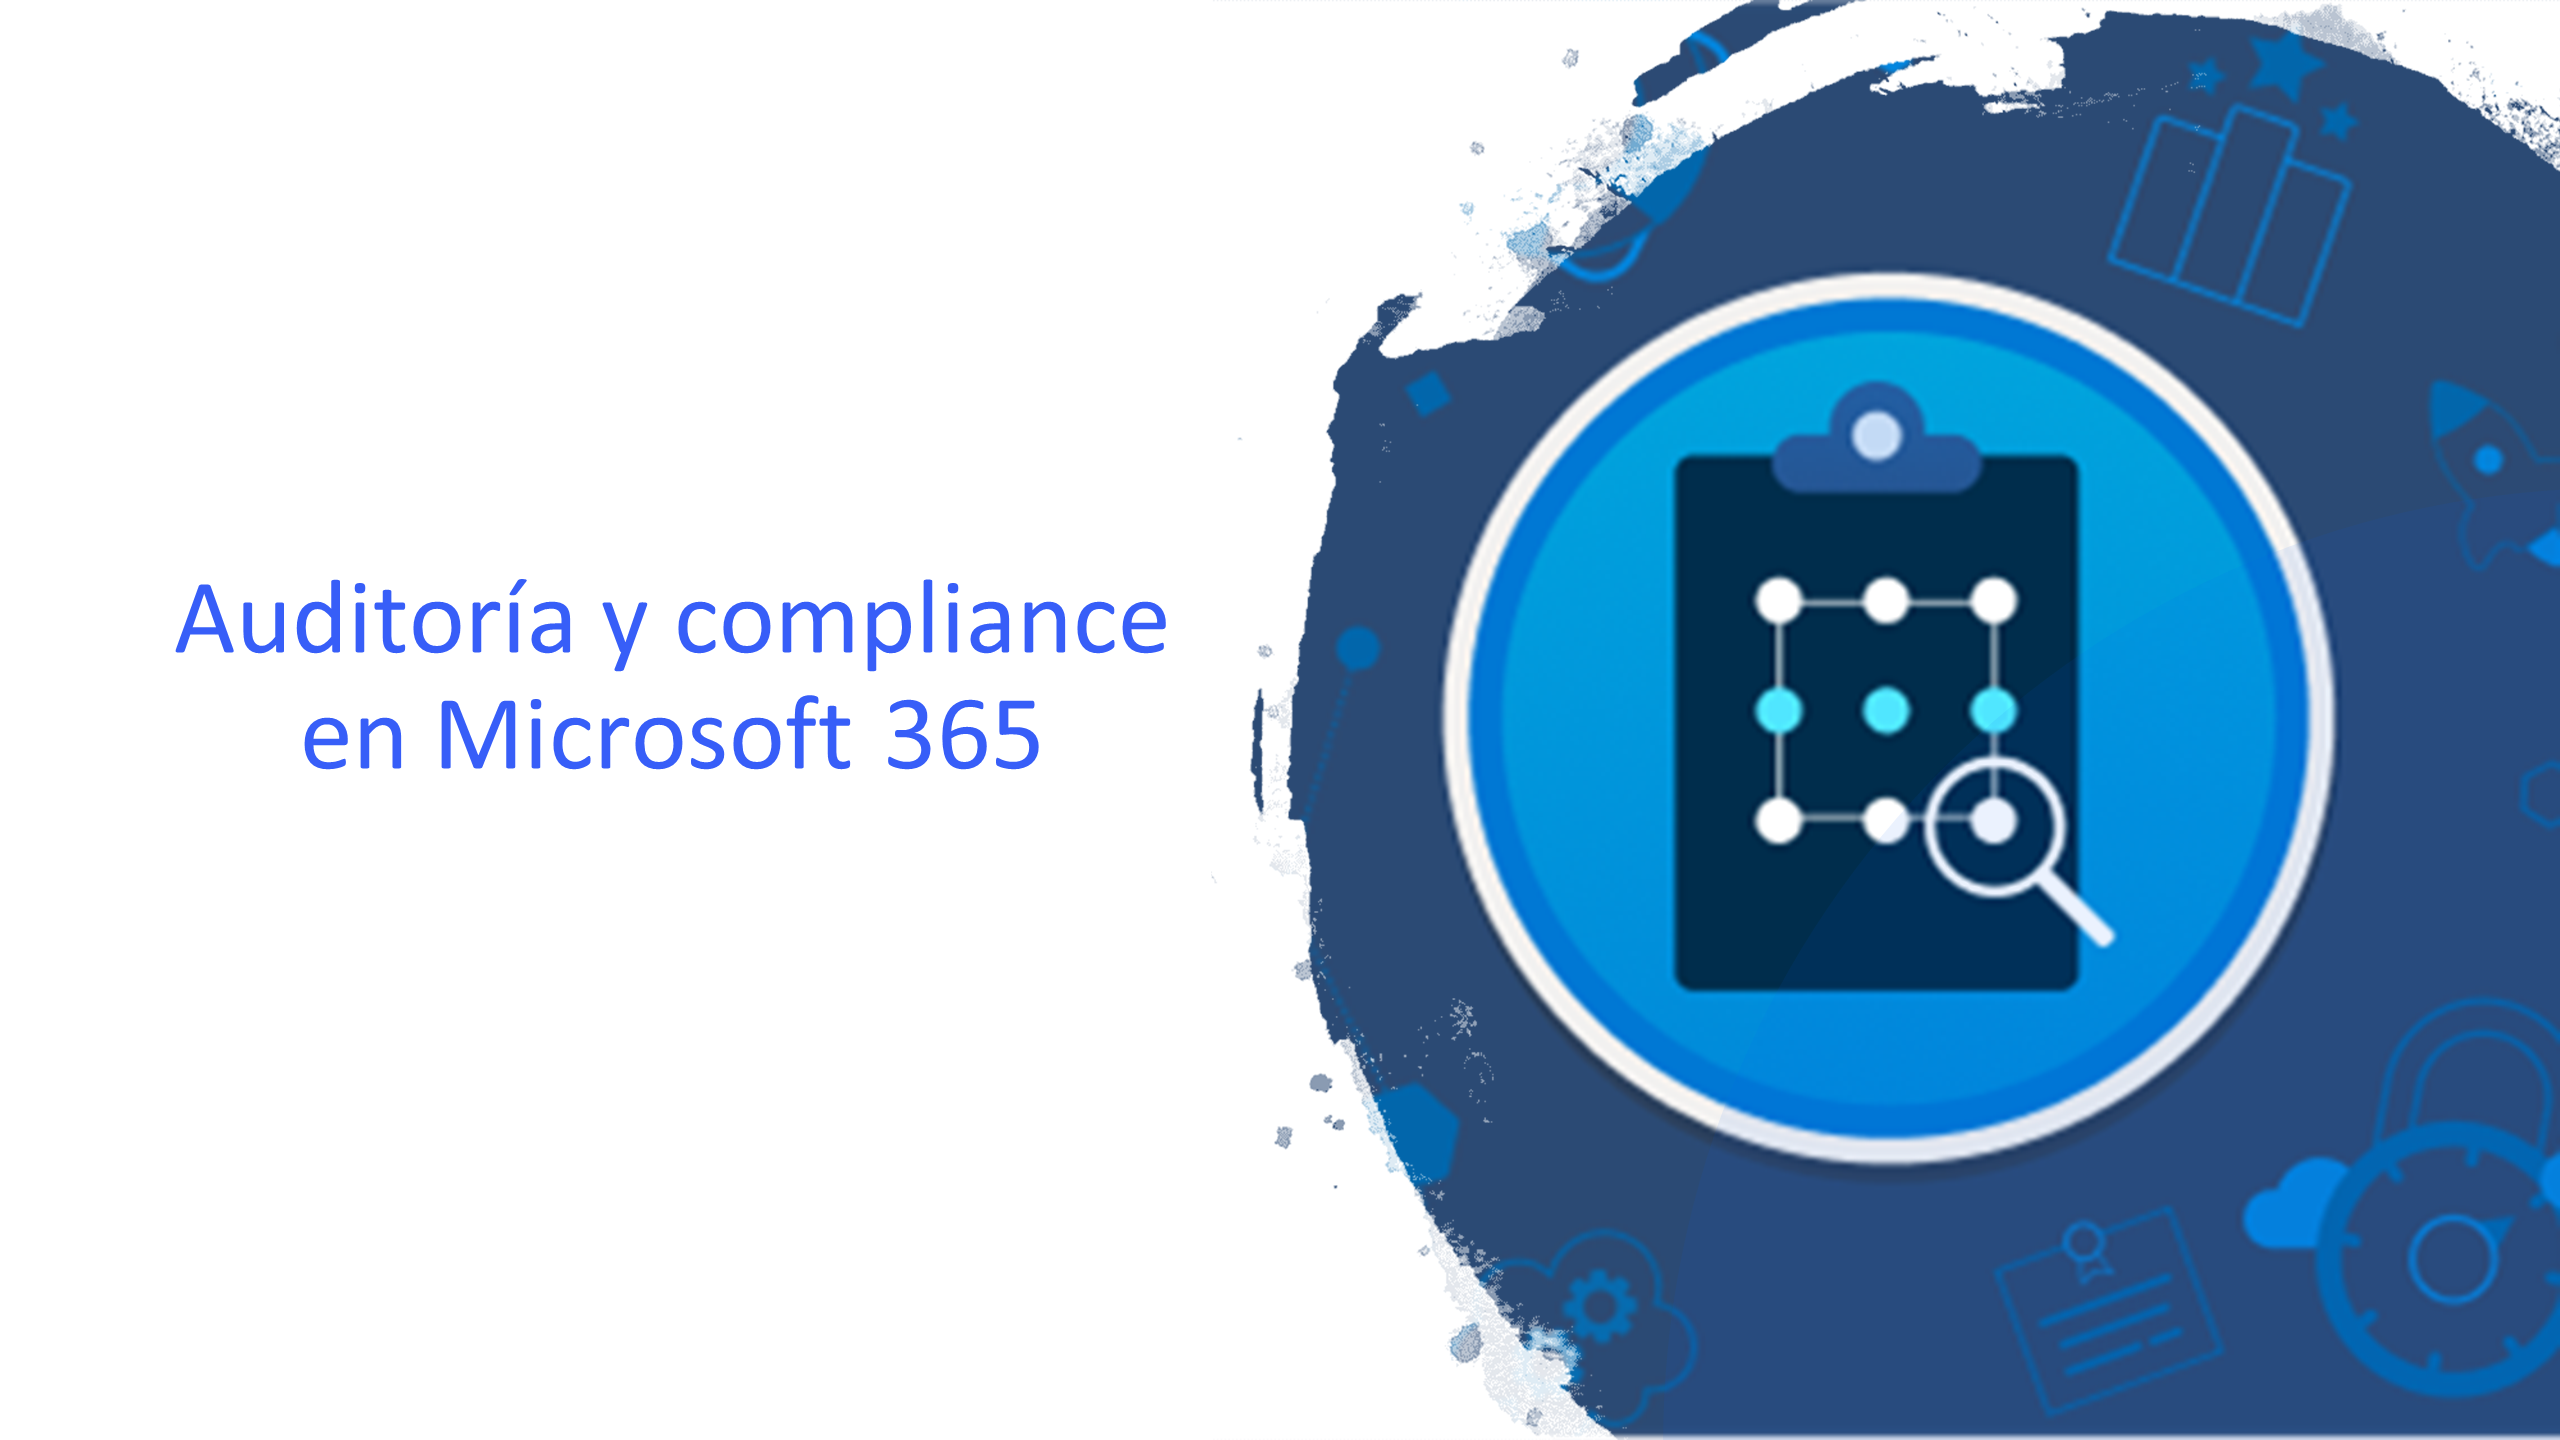 Auditoría y compliance: seguridad en Microsoft 365